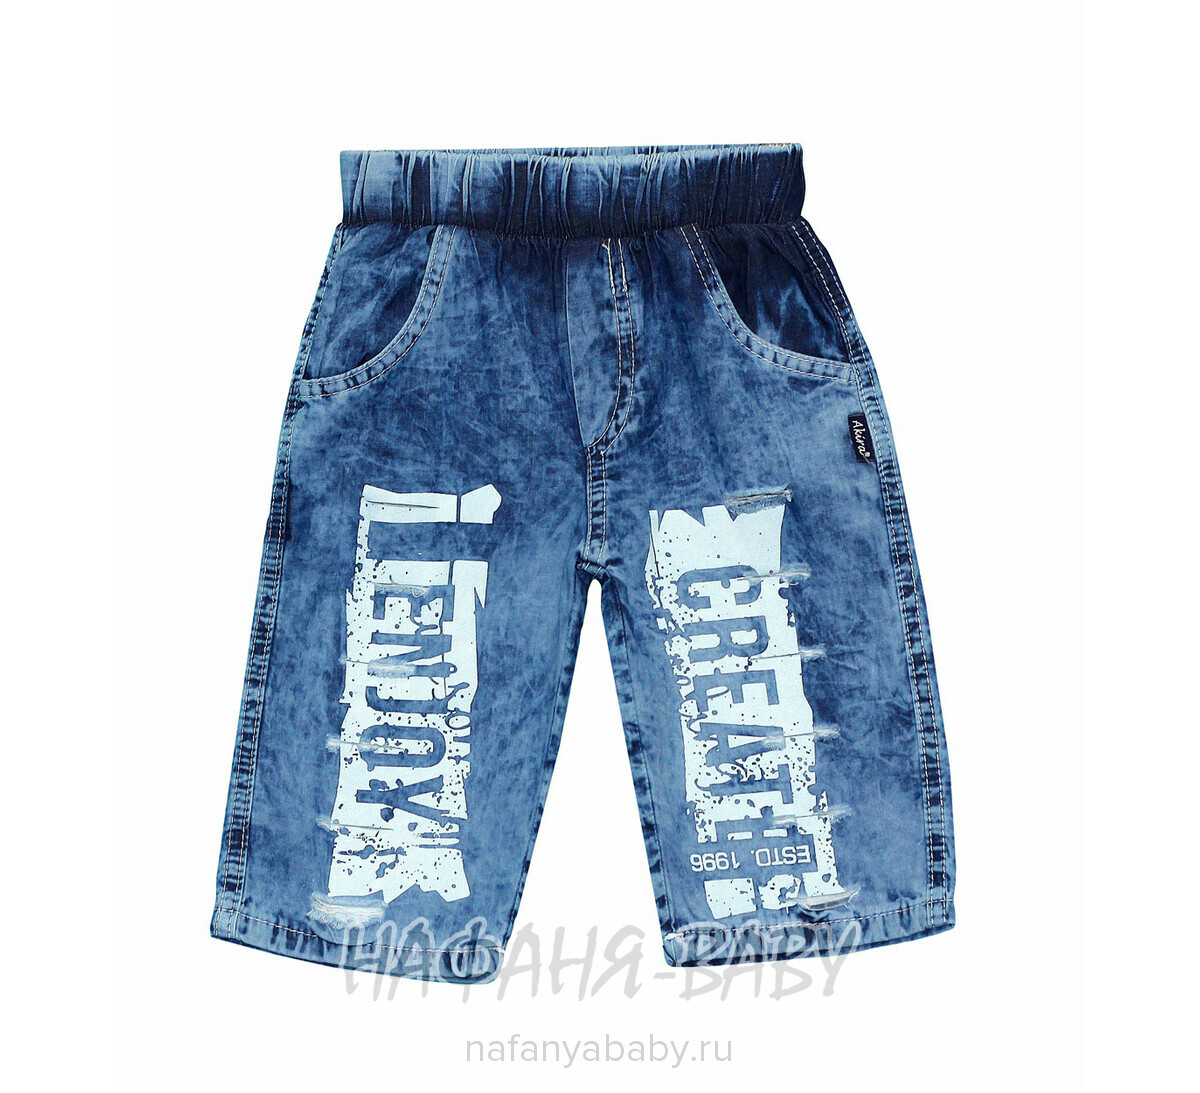 Детские джинсовые шорты AKIRA арт: 2385, 5-9 лет, оптом Турция